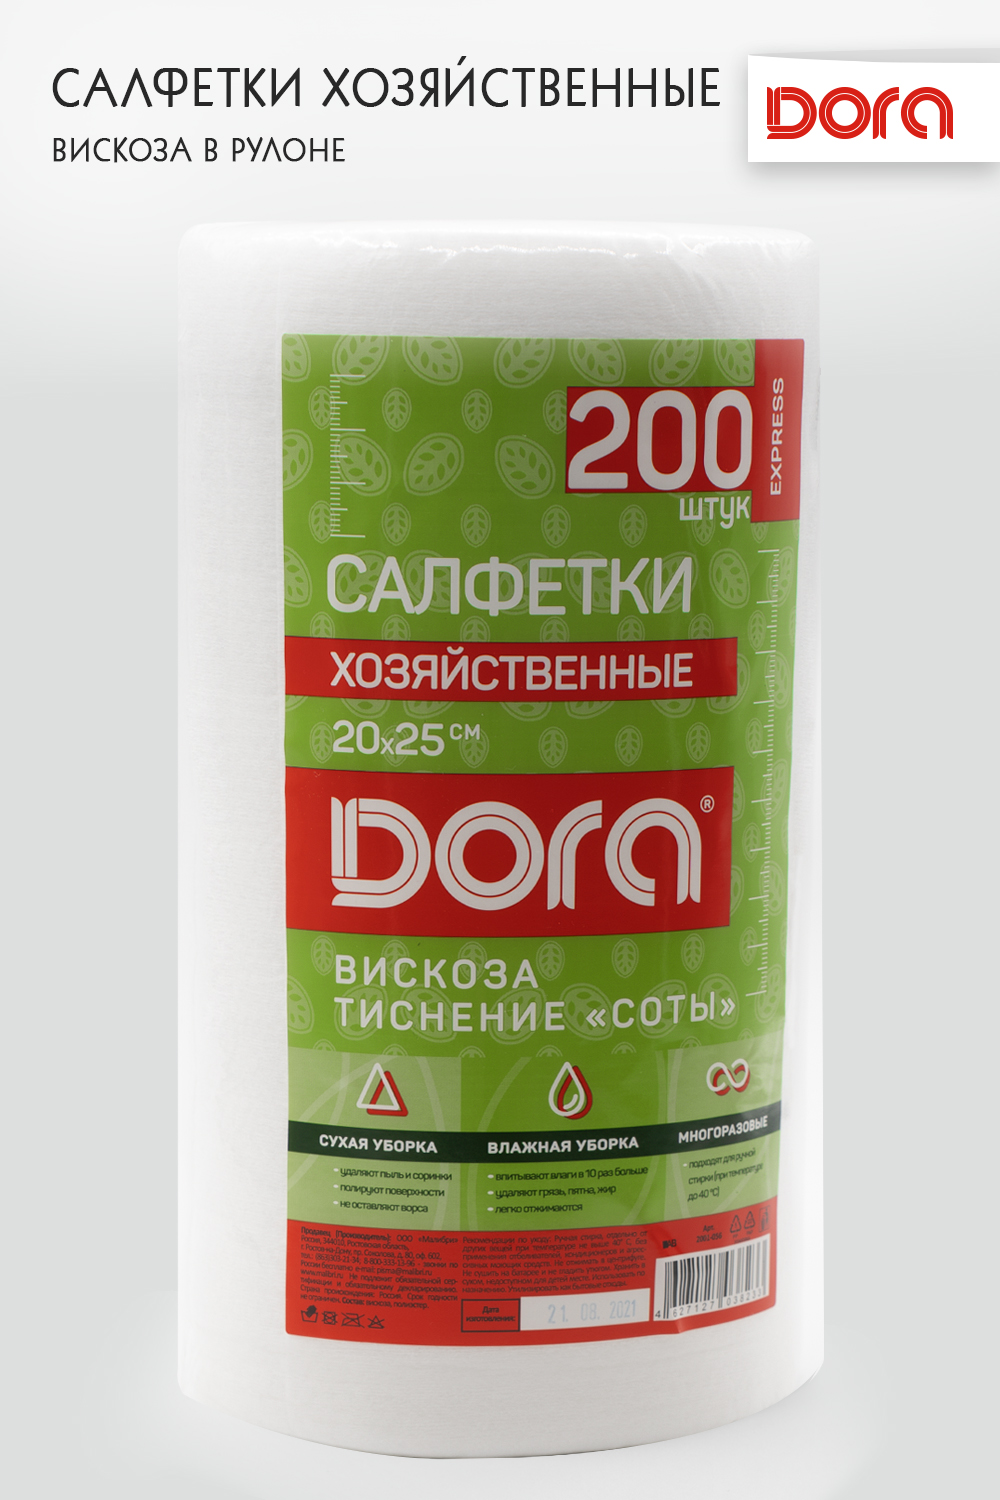 Салфетки из вискозы DORA хозяйственные с текстурой соты в рулоне 20х25 см 200 штук - фото 1